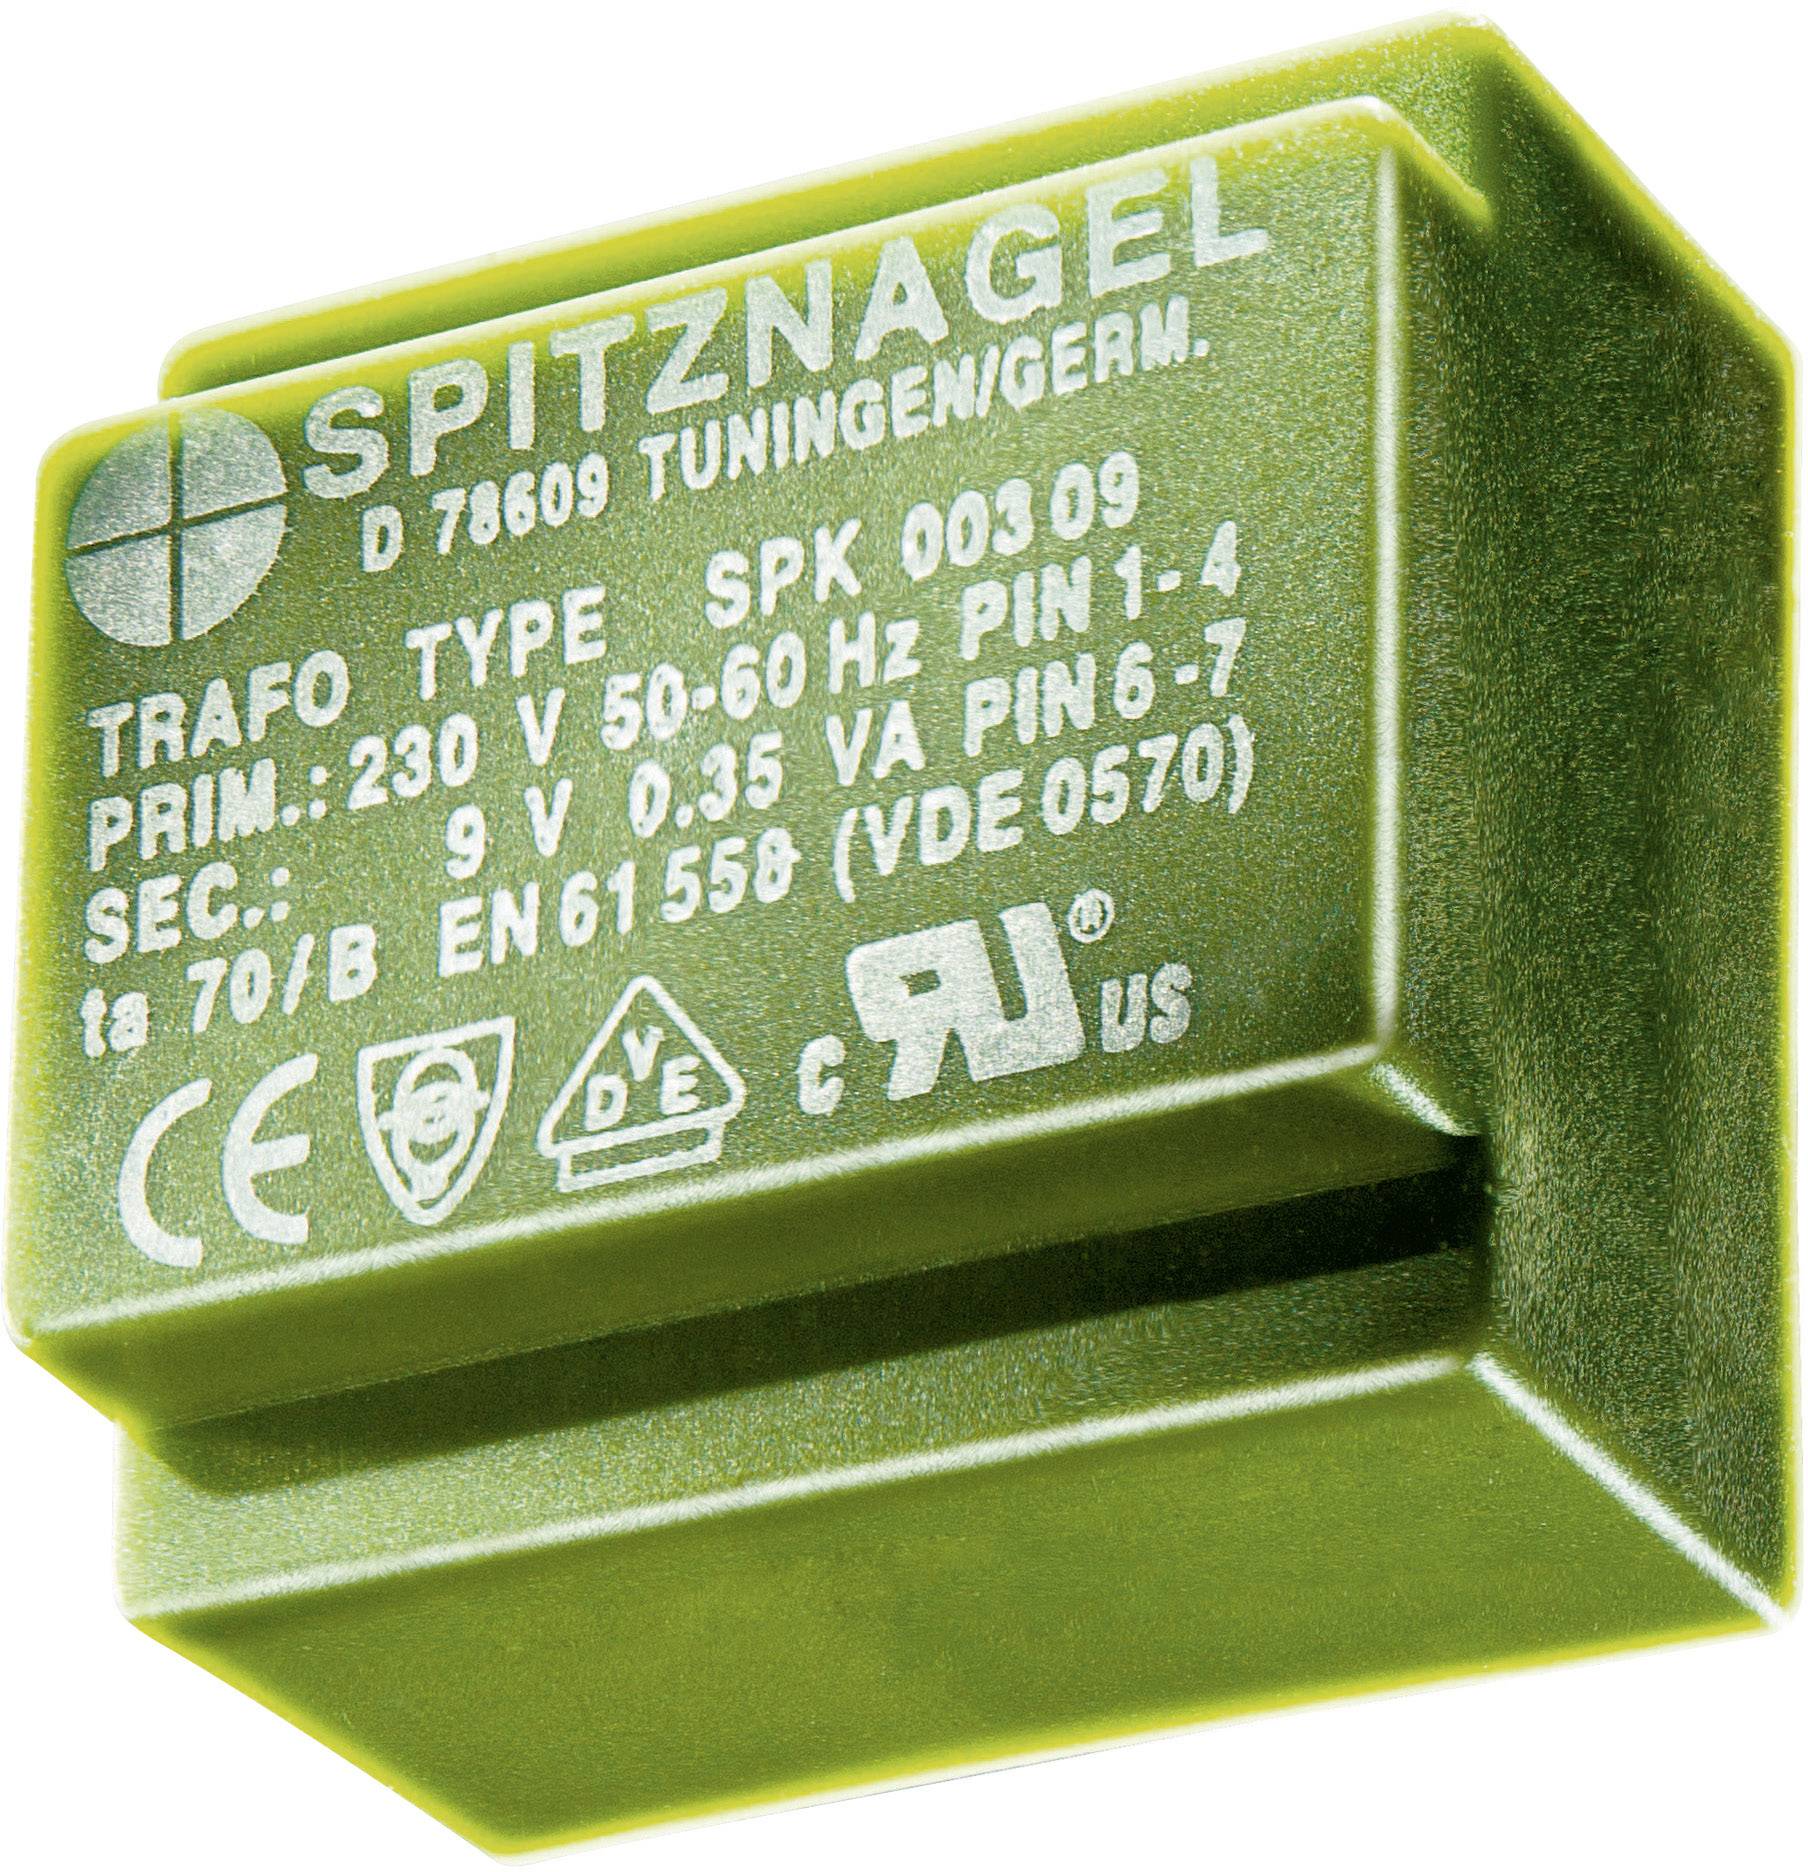 Details about   Print-Transformer/Transformer from Spitznagel Type SPK 2260/20/6/22 Prim 42 V NOS show original title 